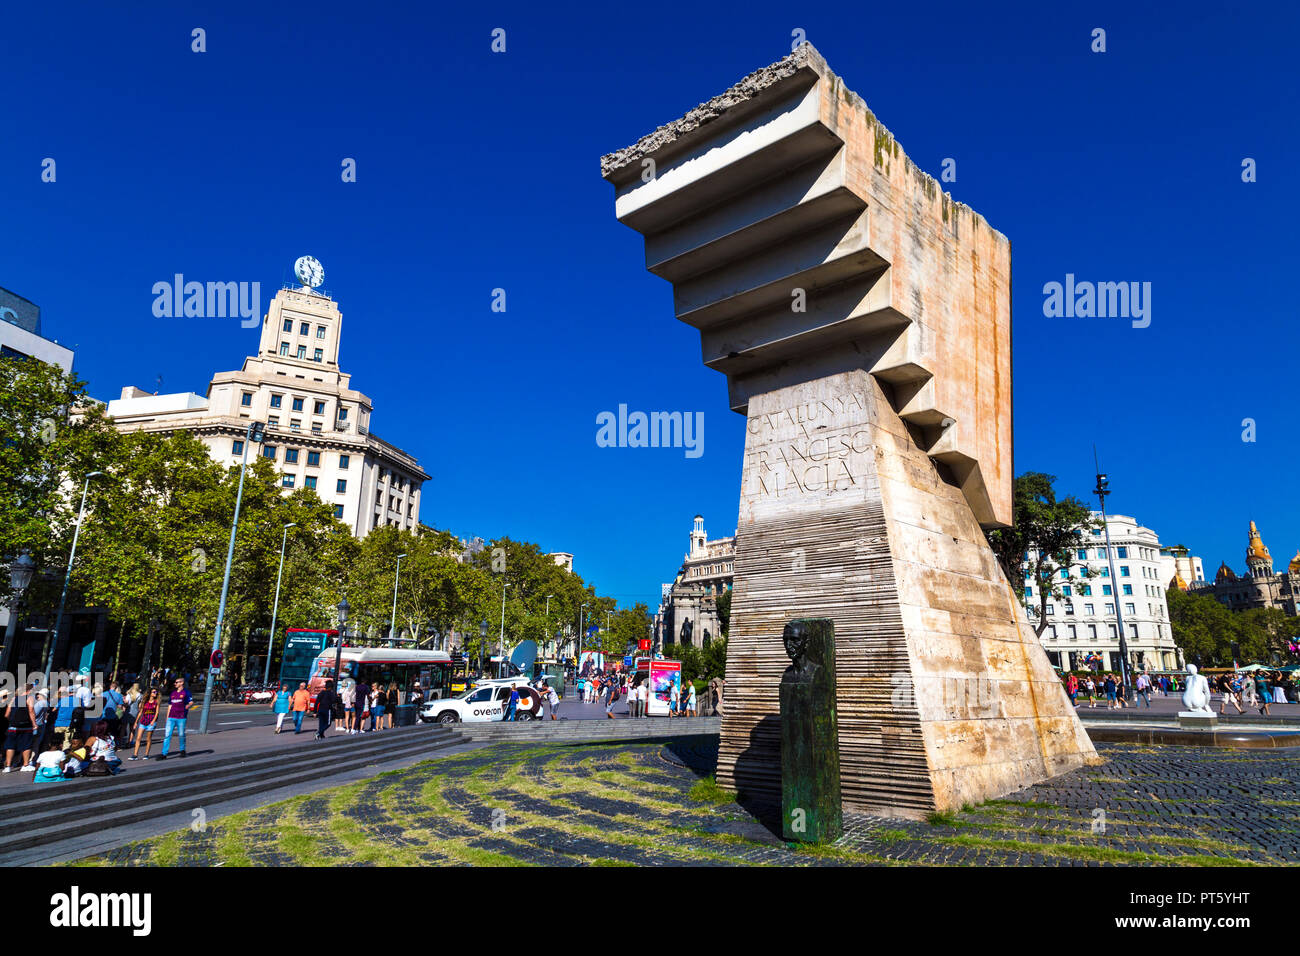 Monumento al catalano leader politico Francesc Macià dallo scultore Josep Maria Subirachs, Plaça de Catalunya, Barcelona, Spagna Foto Stock